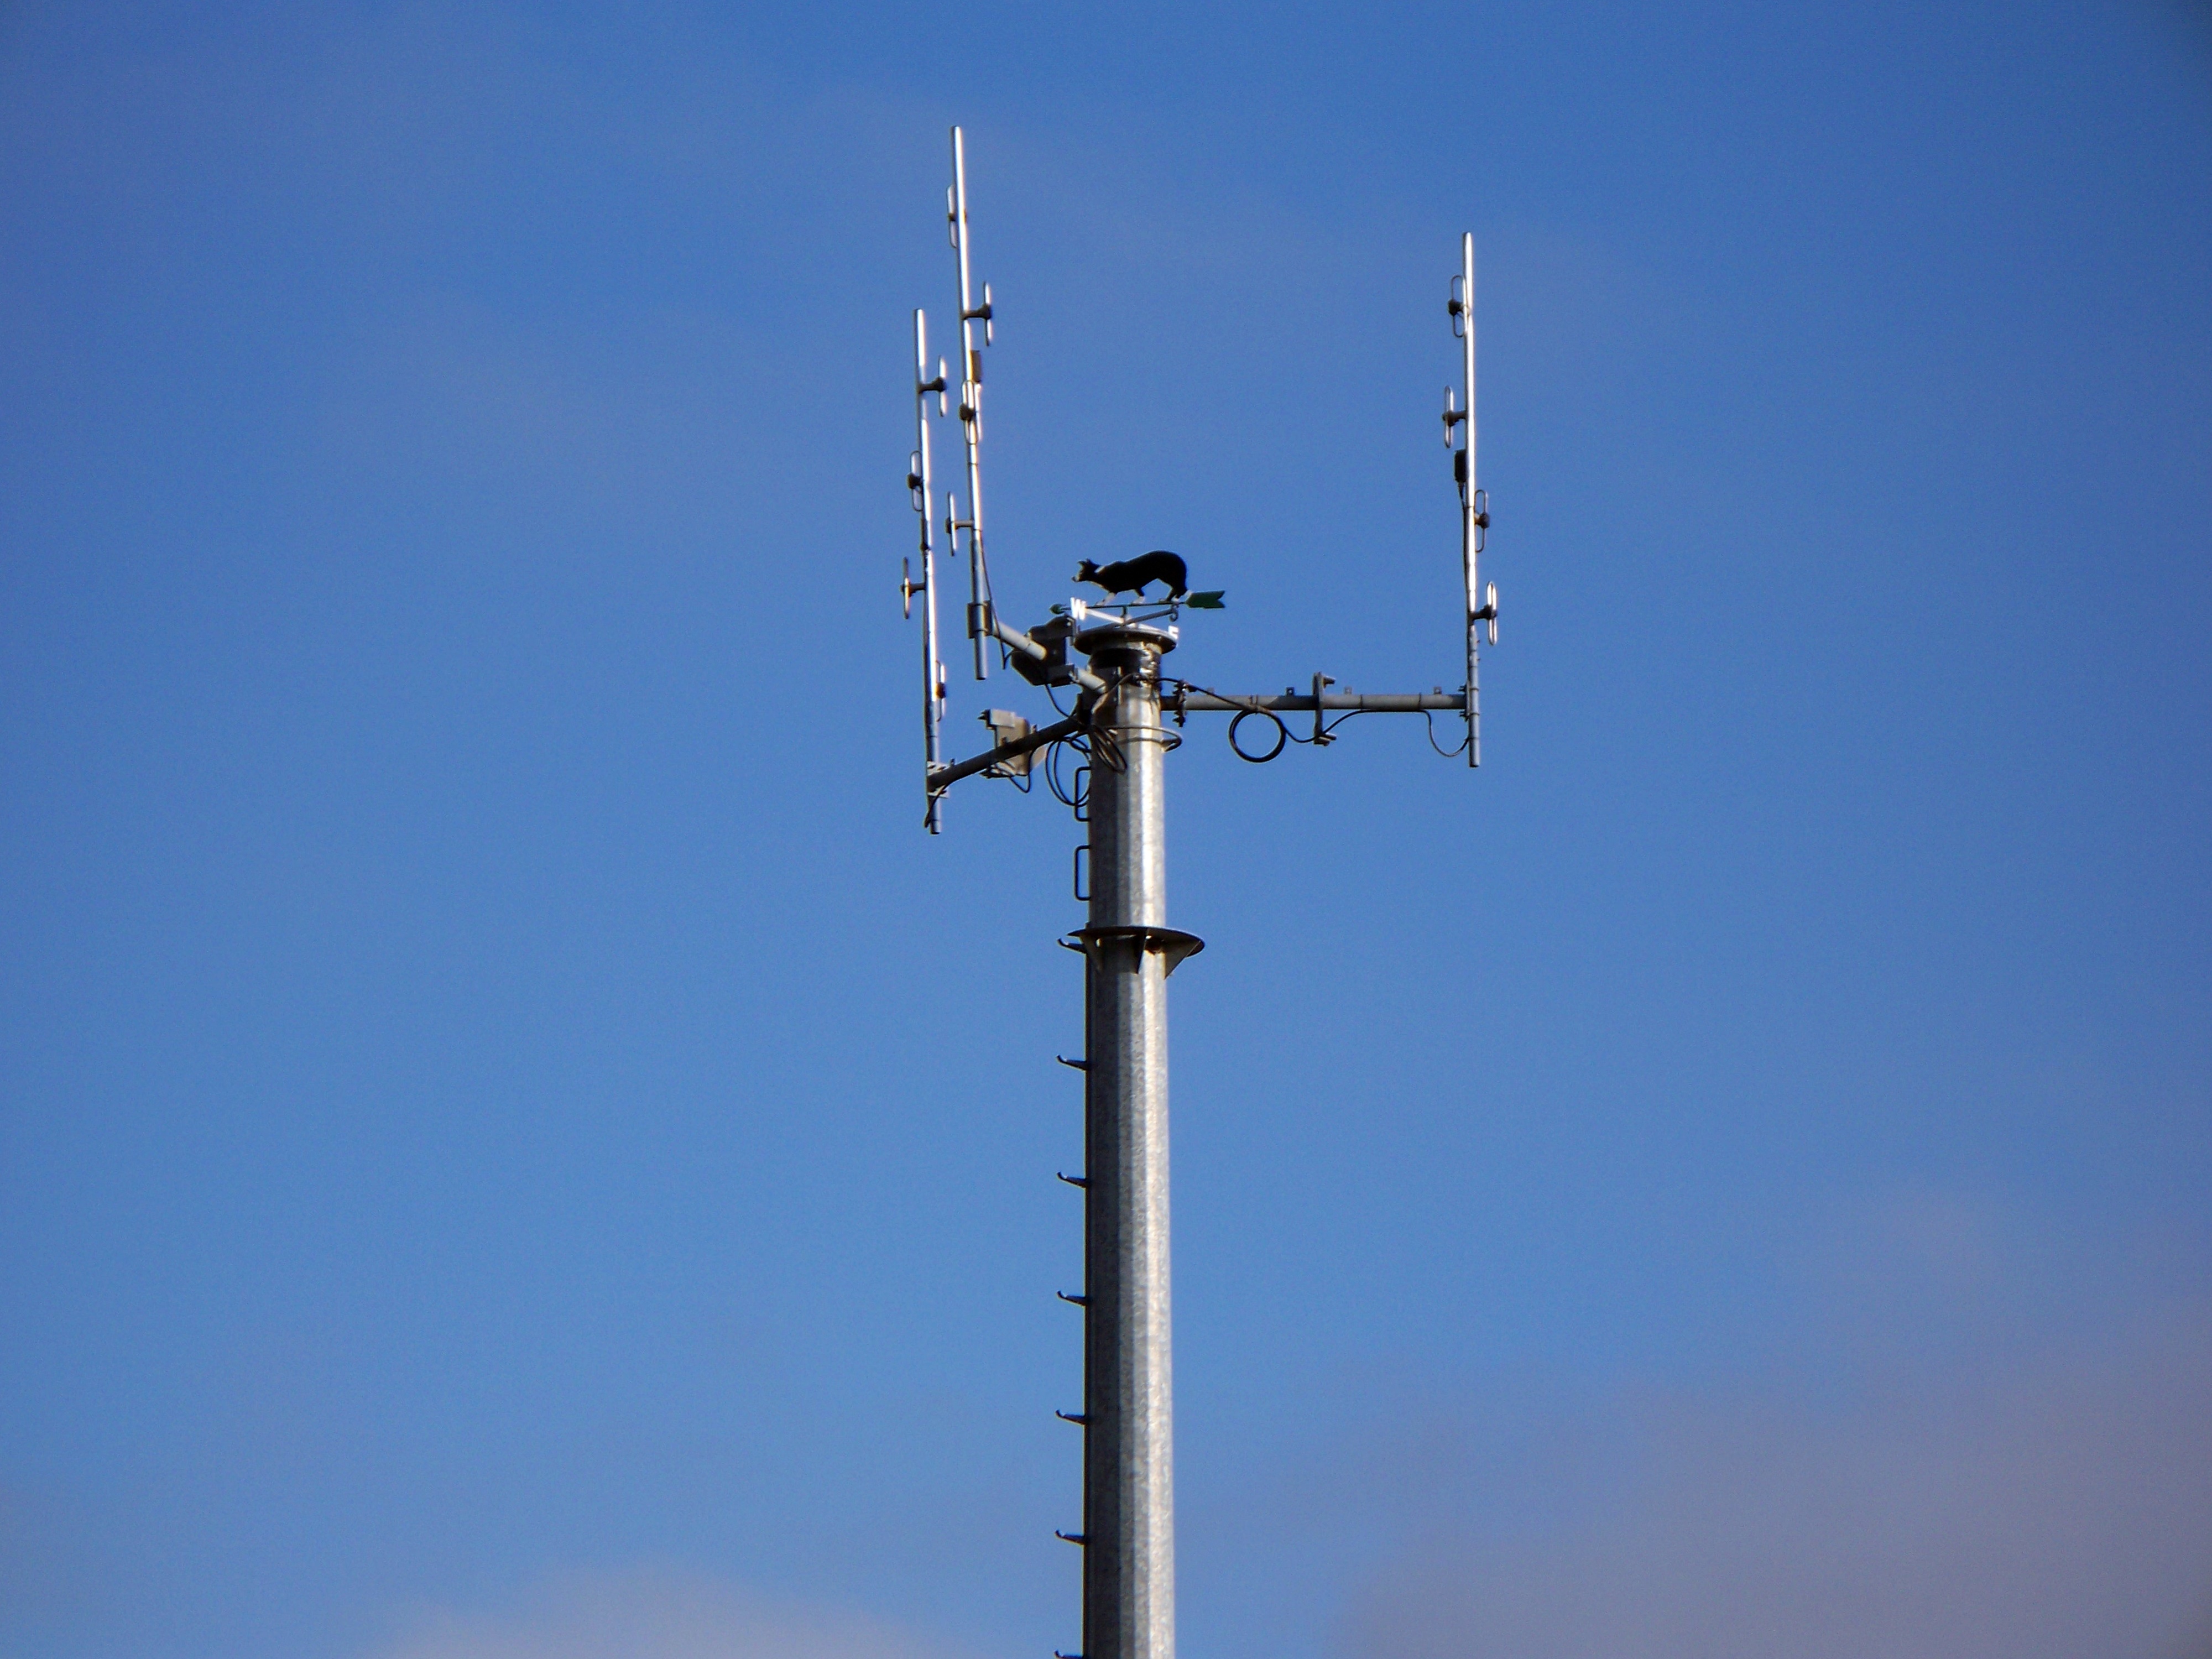 File:Telecommunications mast - geograph.org.uk - 1713144.jpg ...